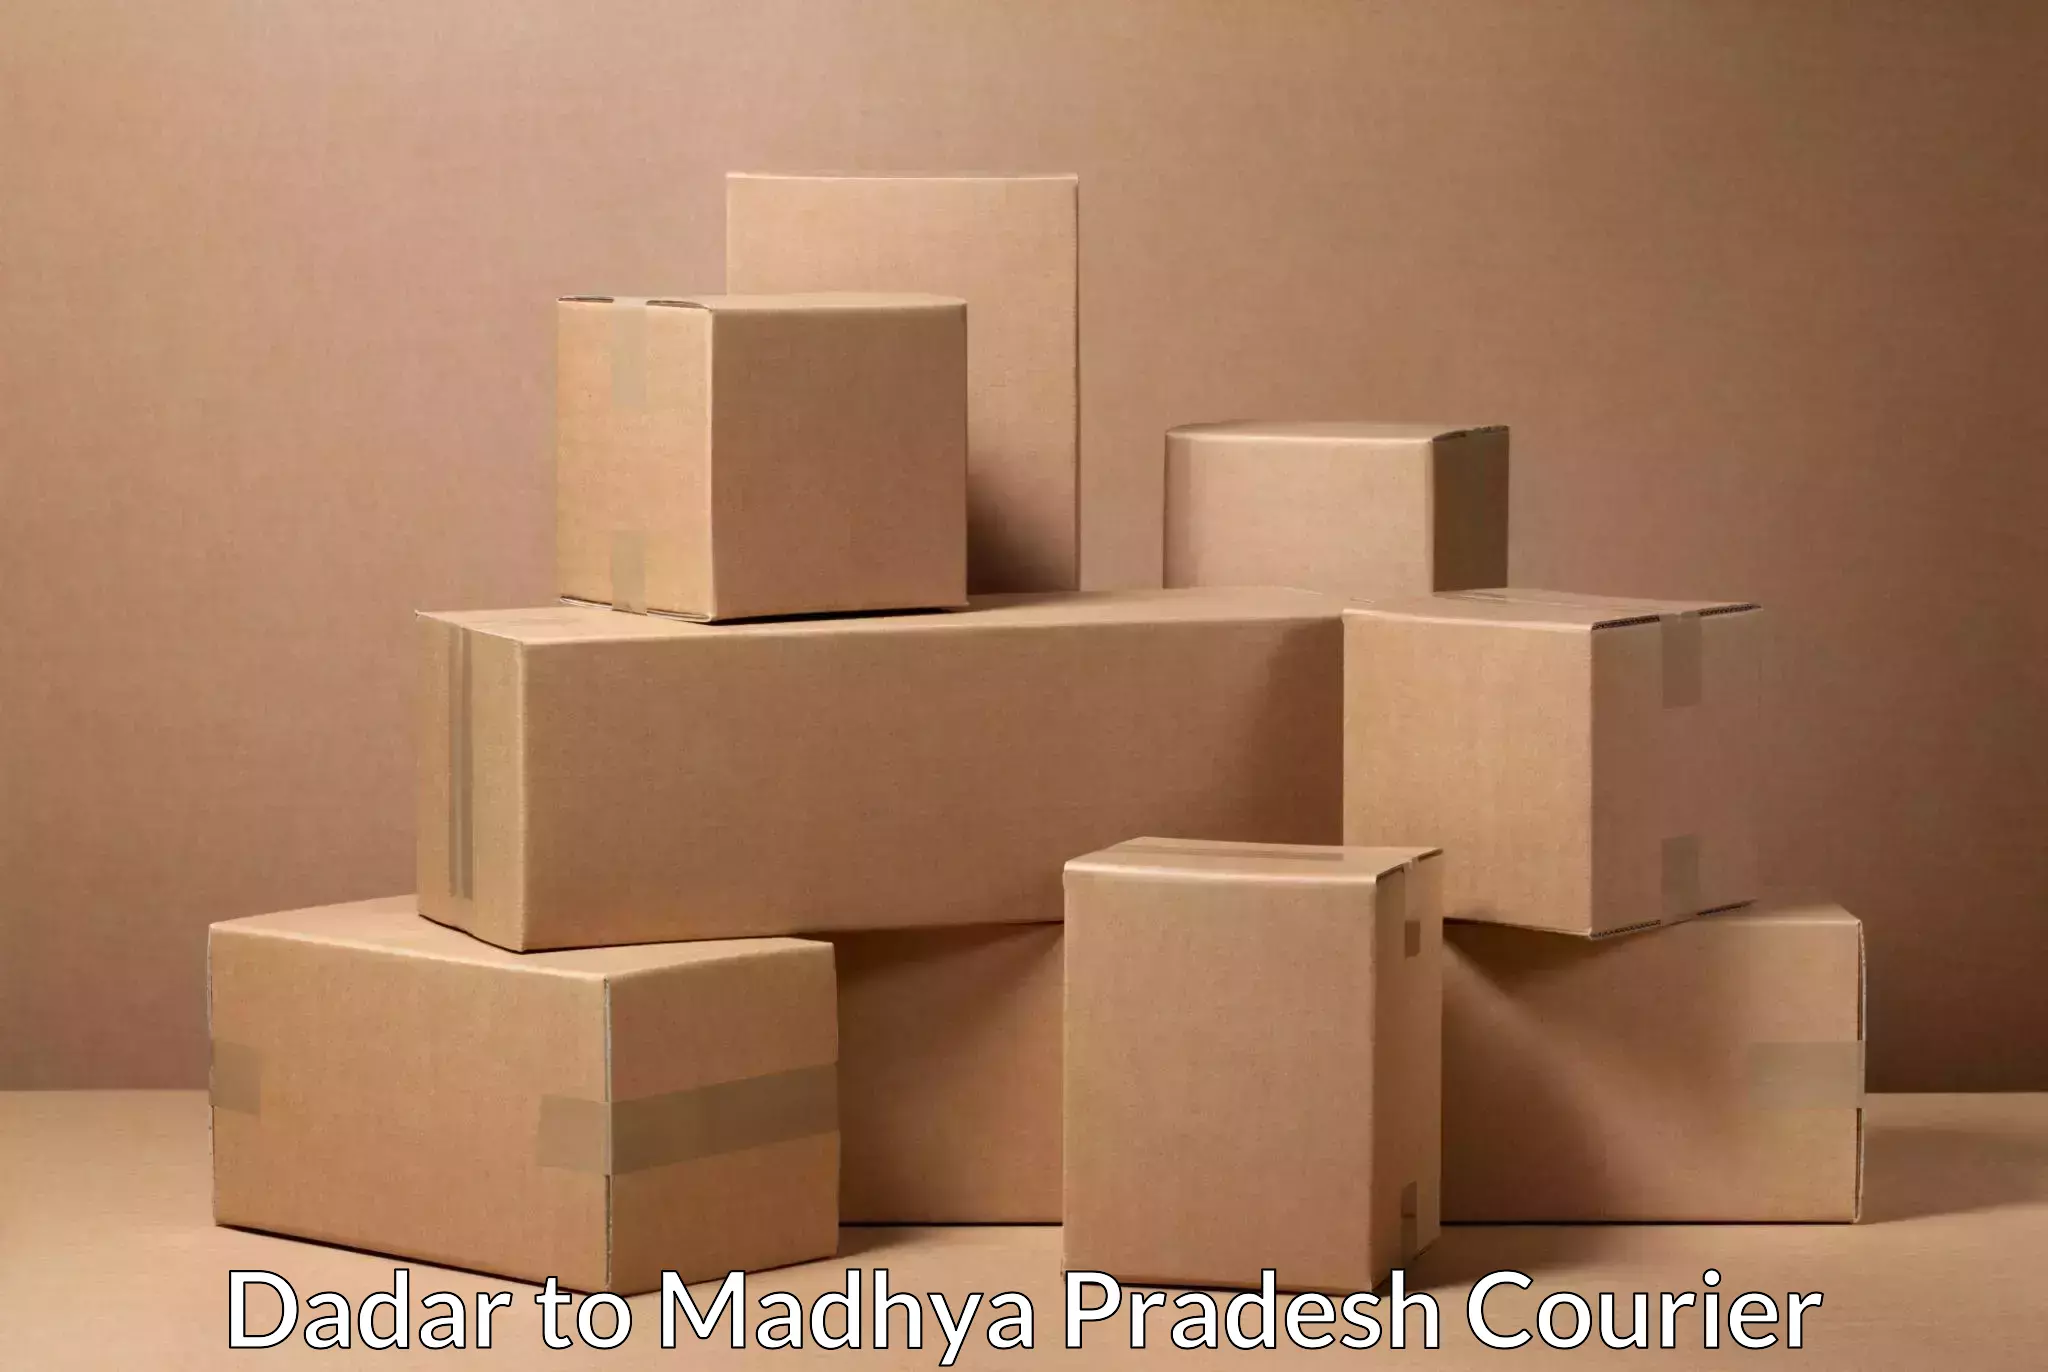 Secure packaging Dadar to Mandsaur